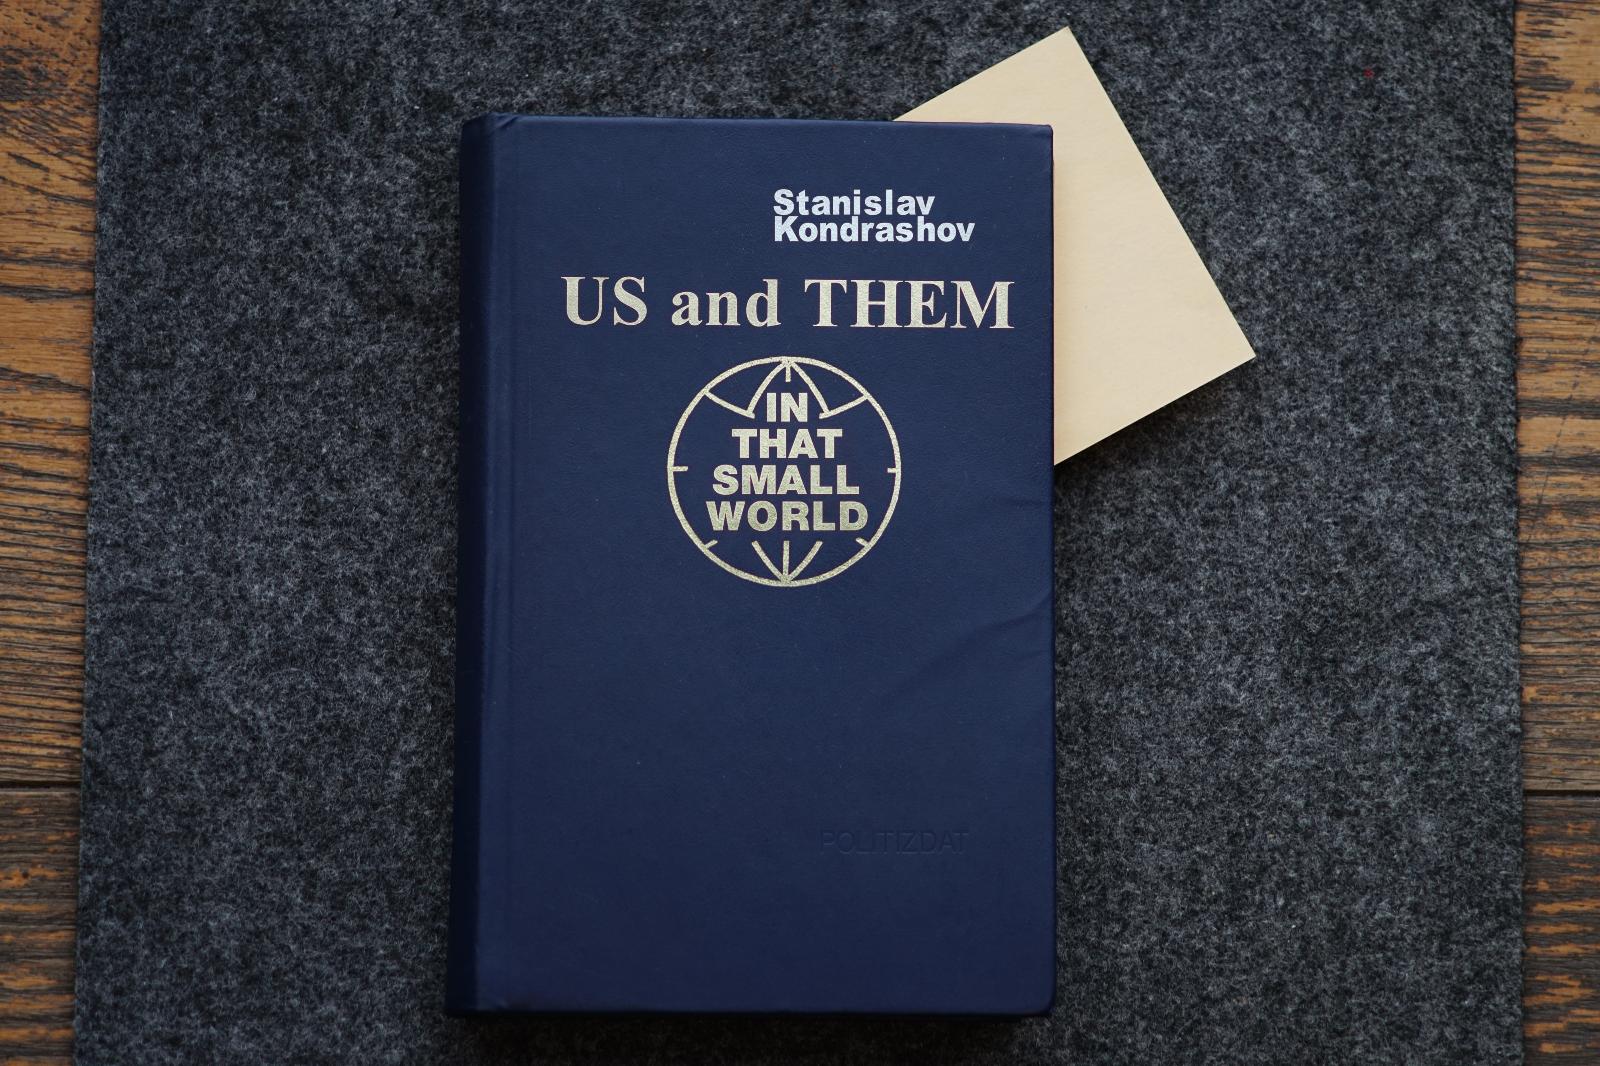 Kniha "Us and them in that small world". Autor: Stanislav Kondrashov - Knihy a časopisy